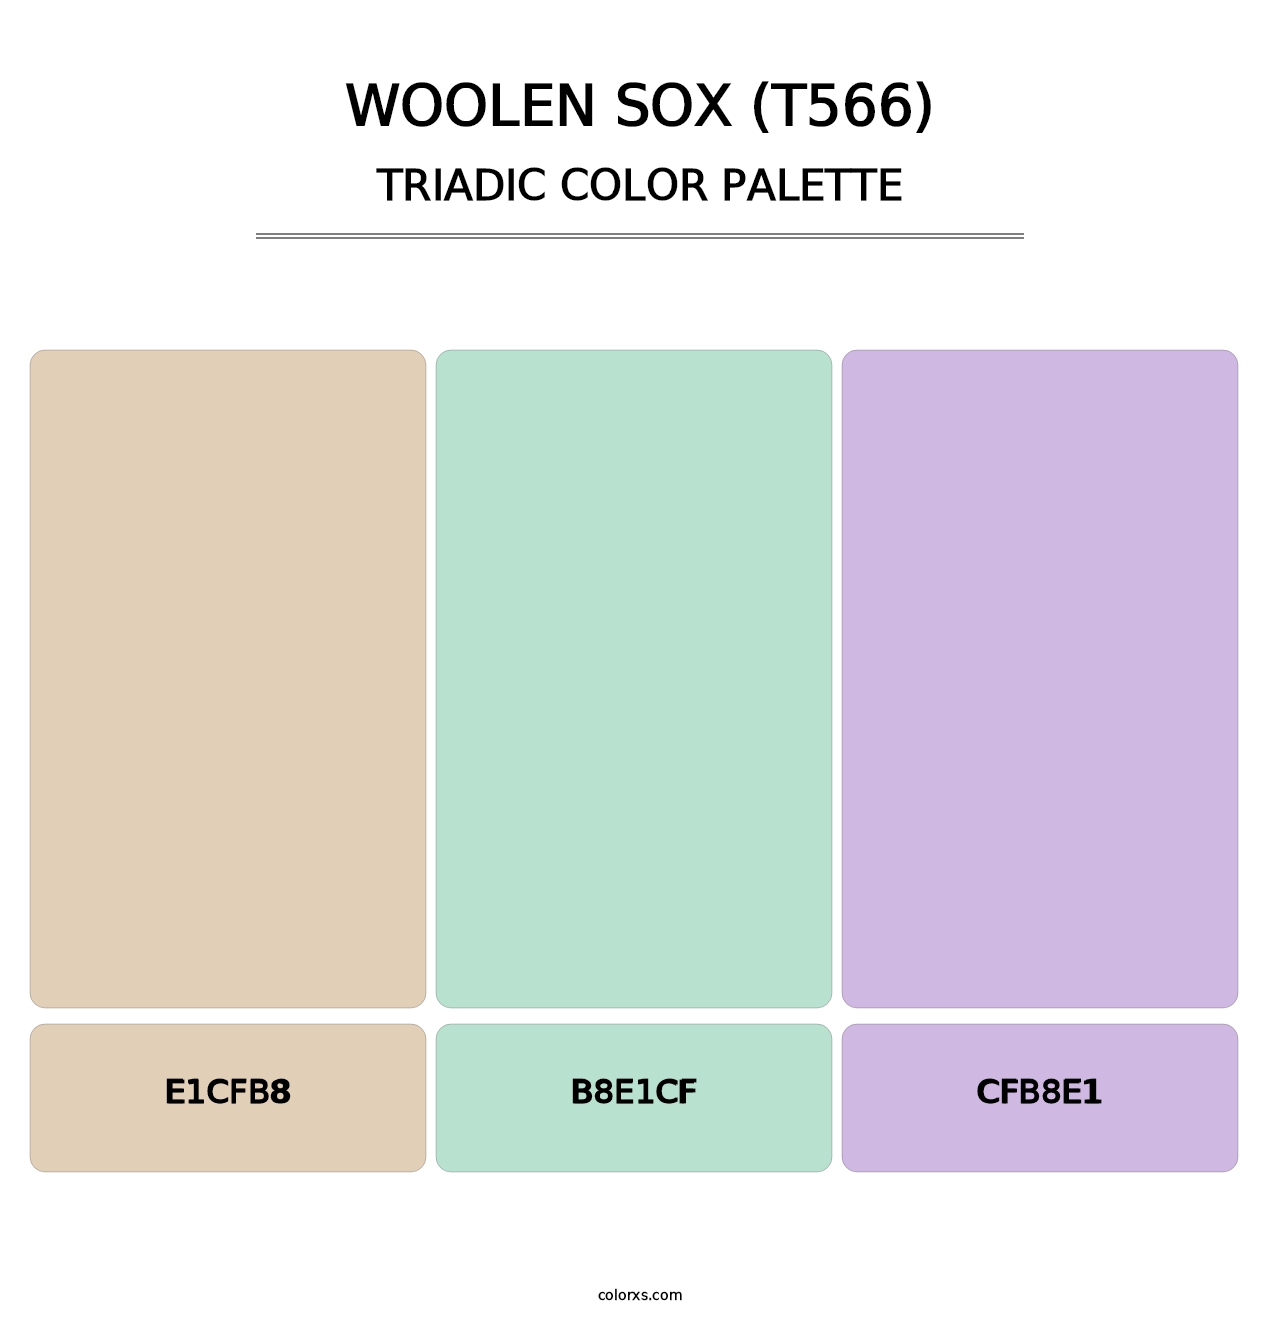 Woolen Sox (T566) - Triadic Color Palette